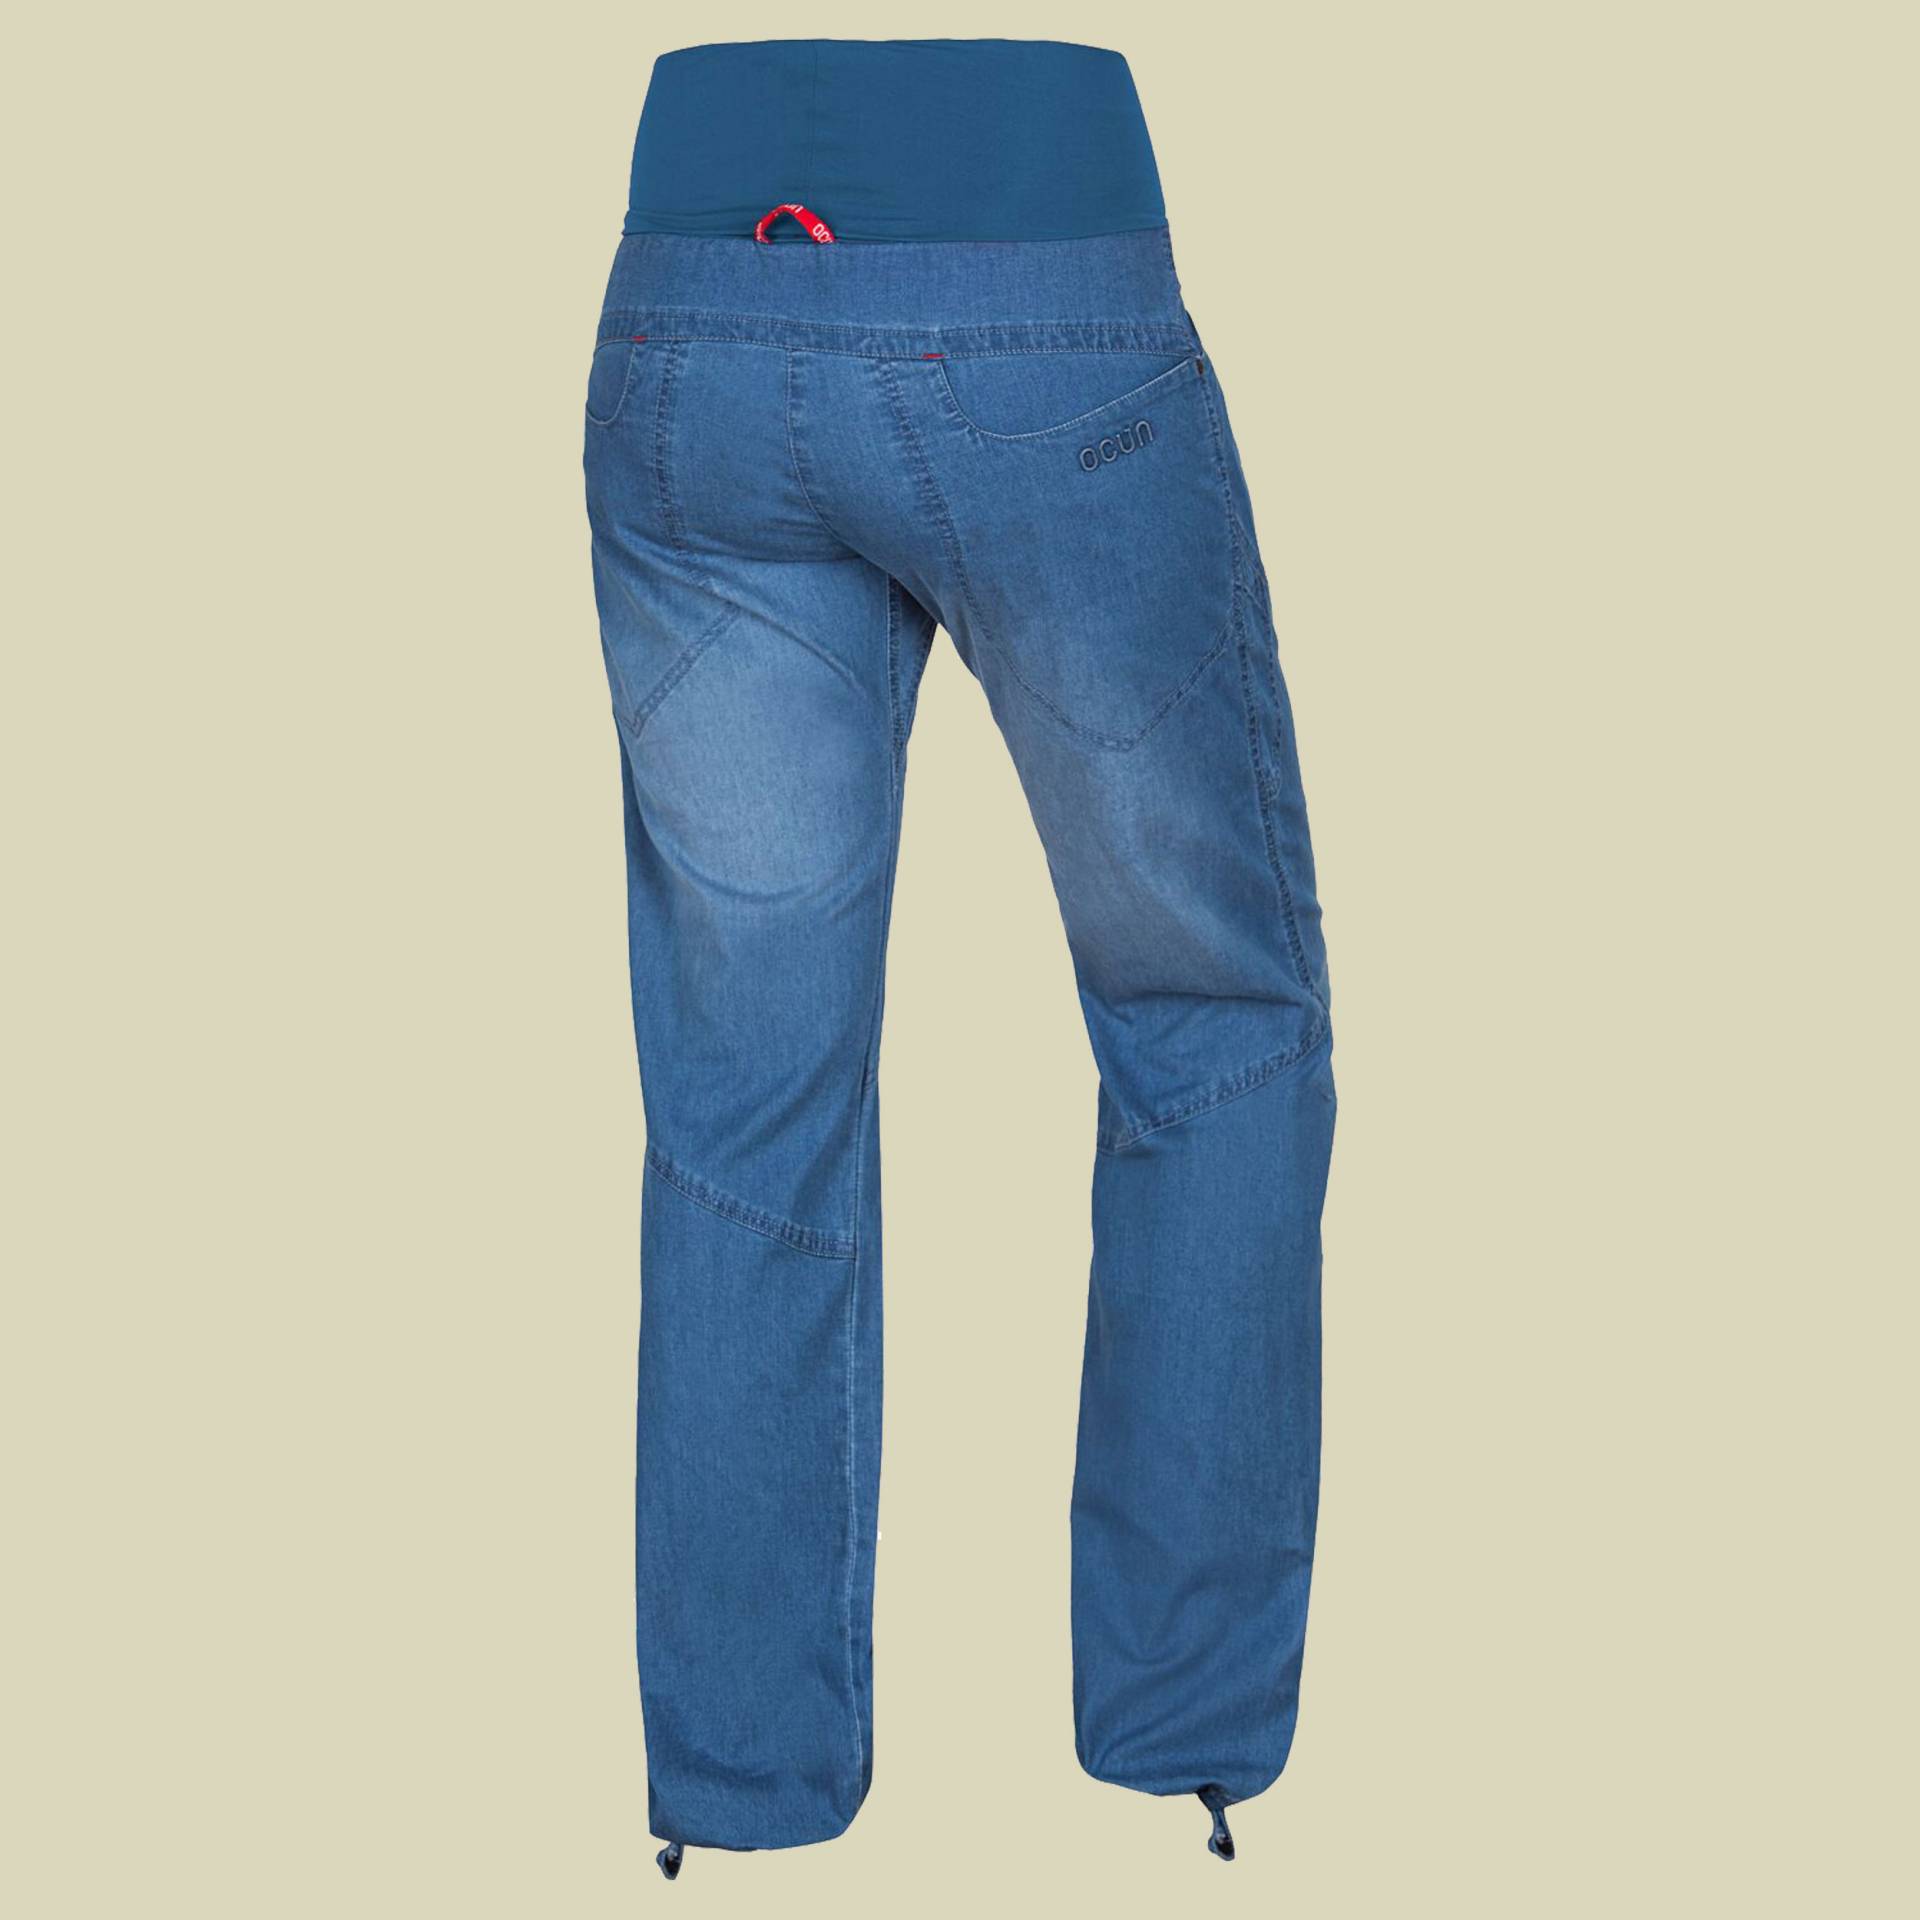 Noya Jeans Women Größe XS Farbe middle blue von Ocun